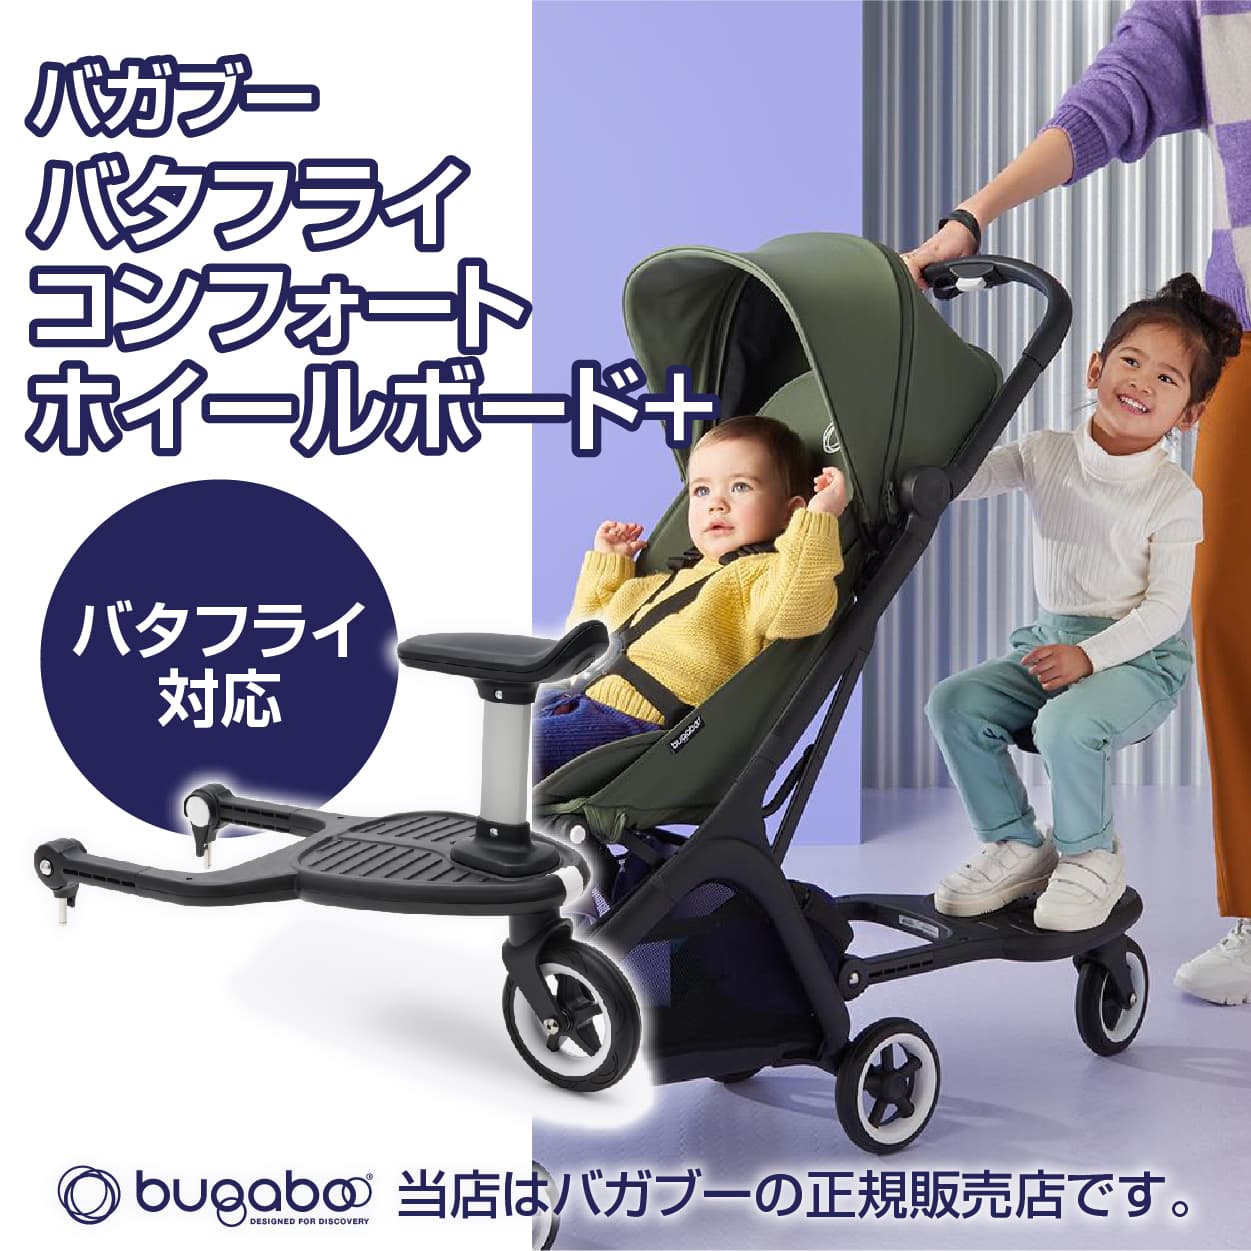 こちらの商品は、バタフライコンフォートホイールボード＋のみの販売です。 バガブー バタフライコンフォートホイールボード＋は赤ちゃんと幼児との外出に最適です。お子さまが座ったり立ったりすることができ、使わないときはサドルをカチッと外してスペー...